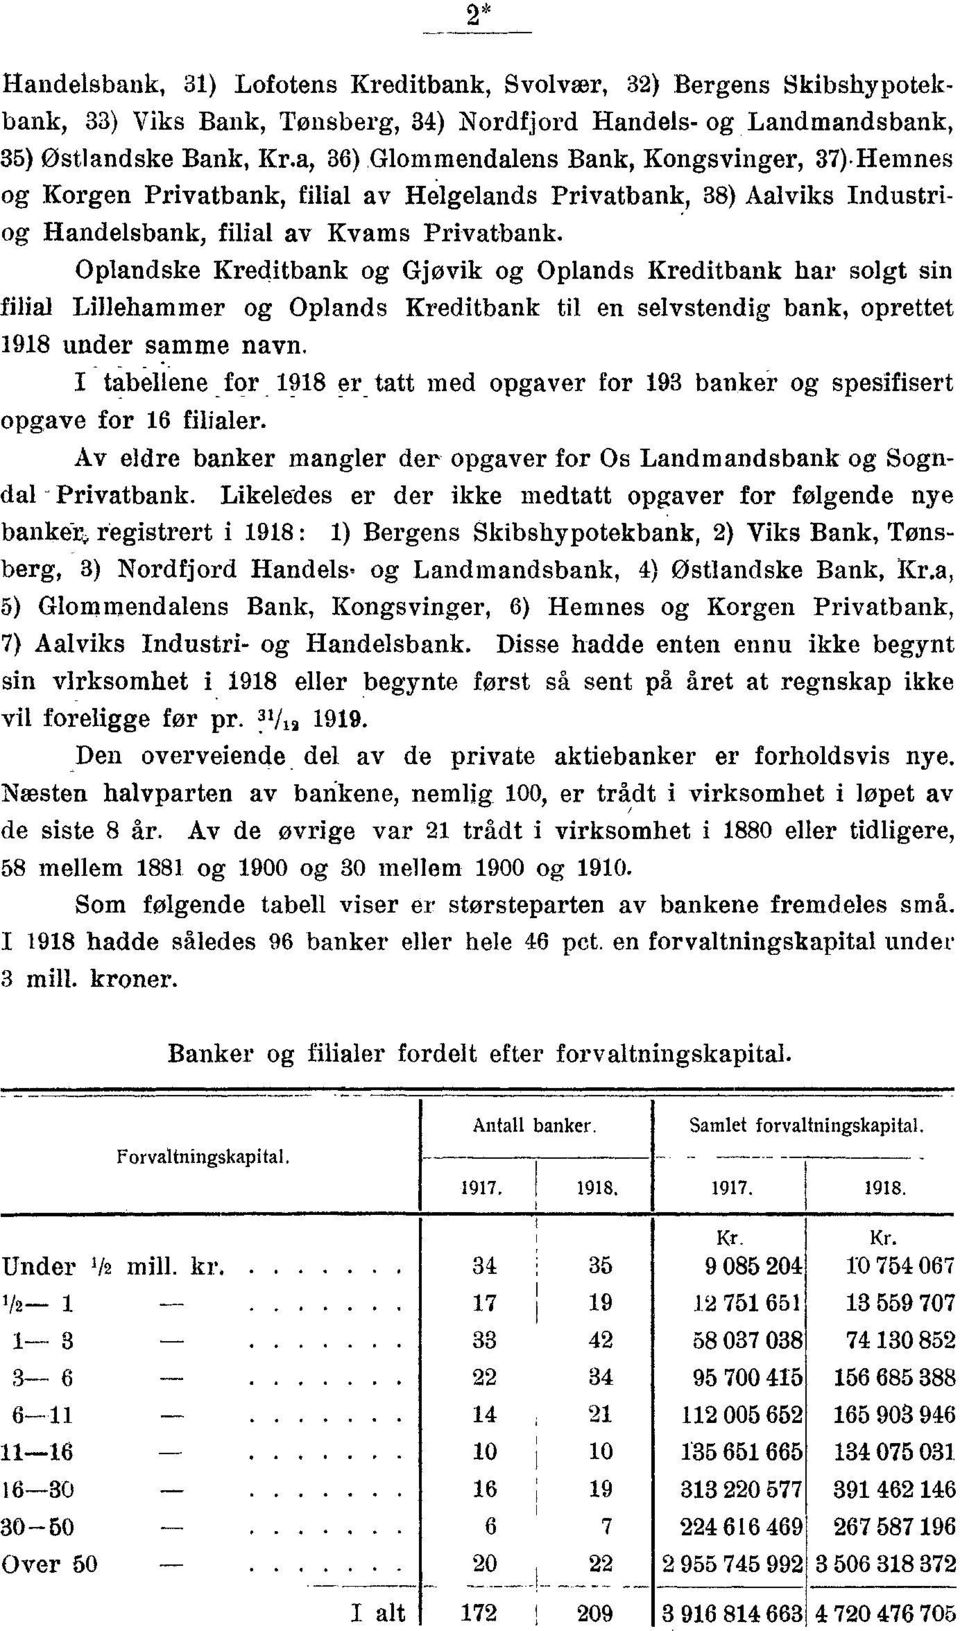 Oplandske Kreditbank og Gjøvik og Oplands Kreditbank har solgt sin filial Lillehammer og Oplands Kreditbank til en selvstendig bank, oprettet 1918 under samme navn.